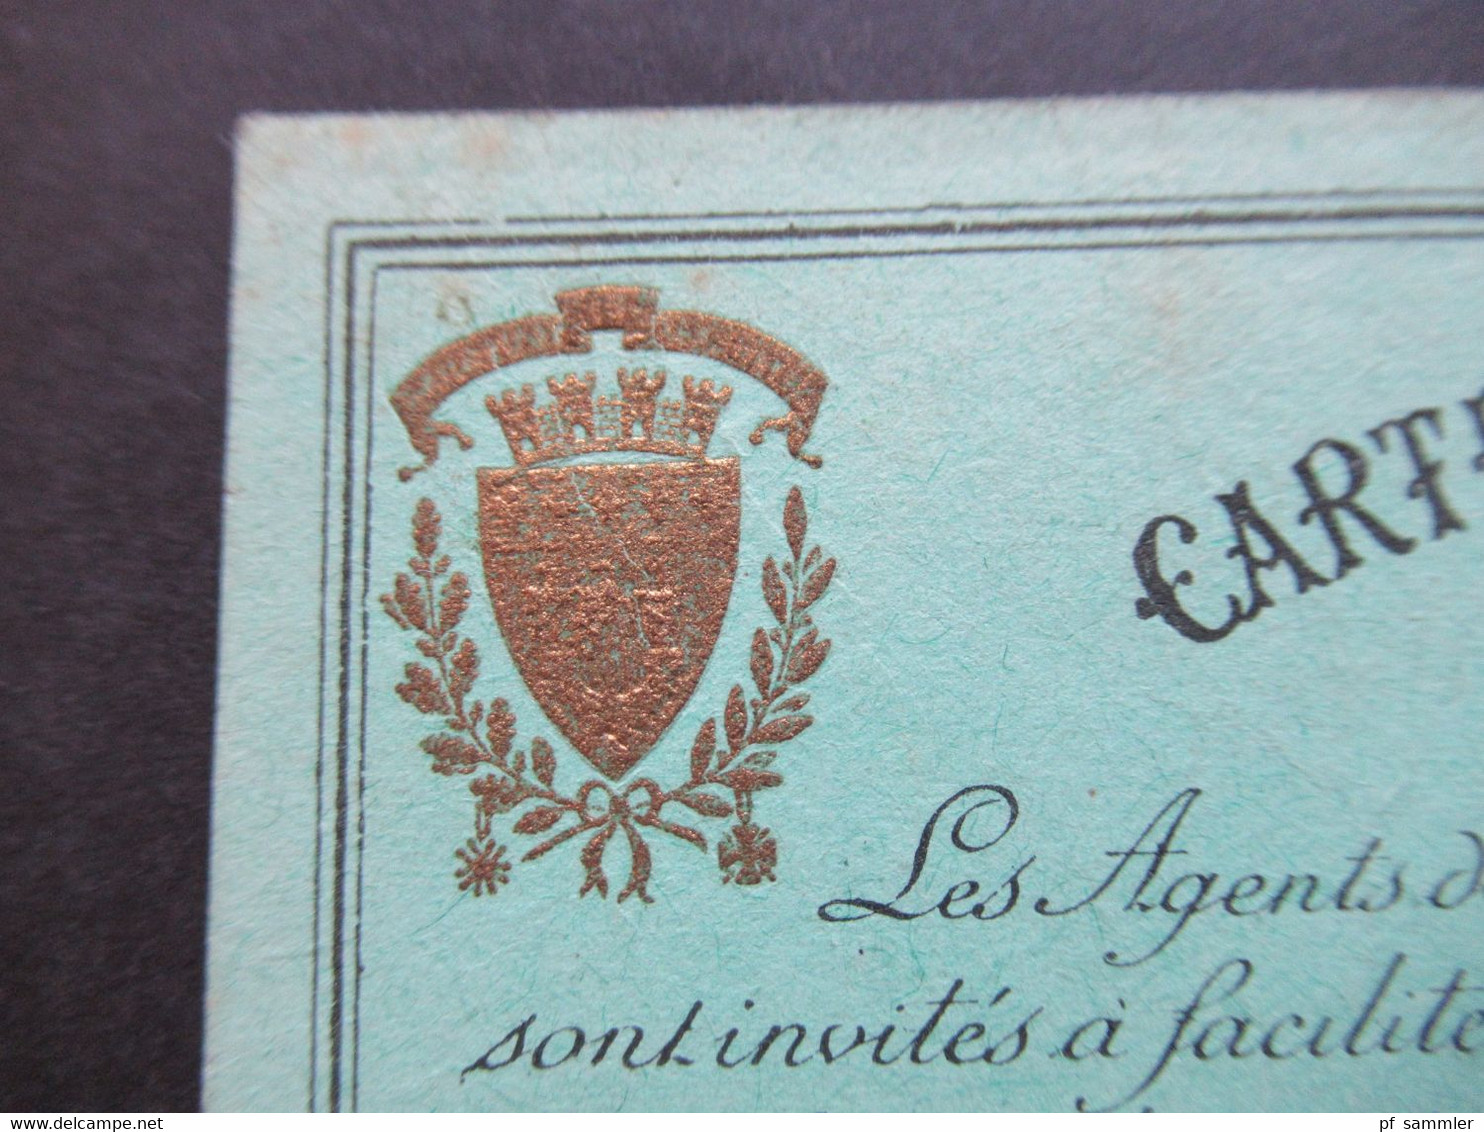 Auto / Voiture Frankreich 1938 Carte De Circulation De La Voiture De Baron Brincard President Credit Lyonnais - Historical Documents